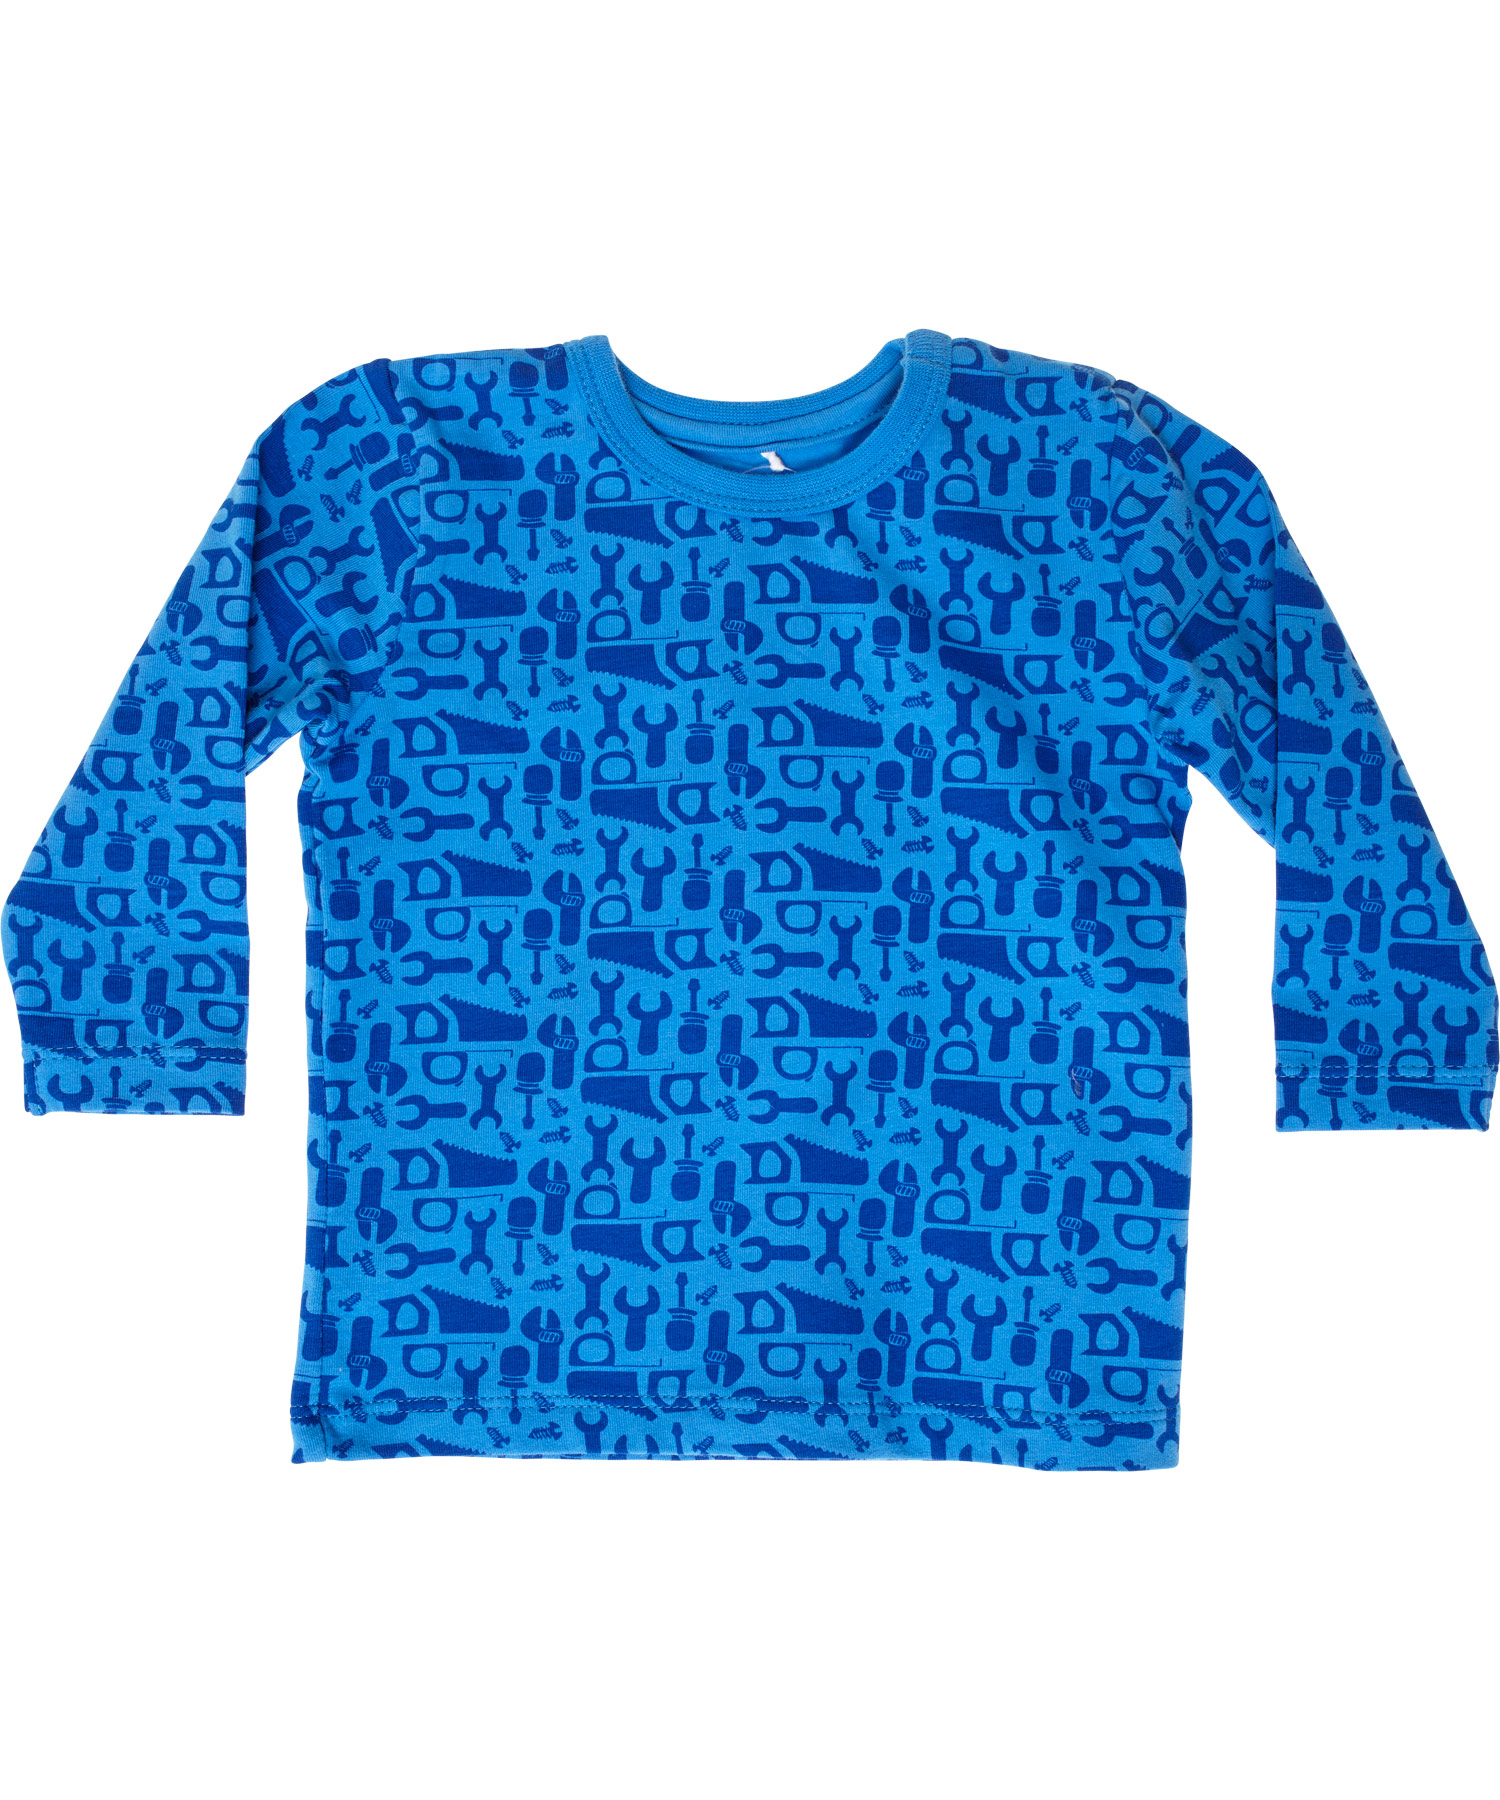 New! Name It fun tool printed blue newborn t-shirt (Yums nb)